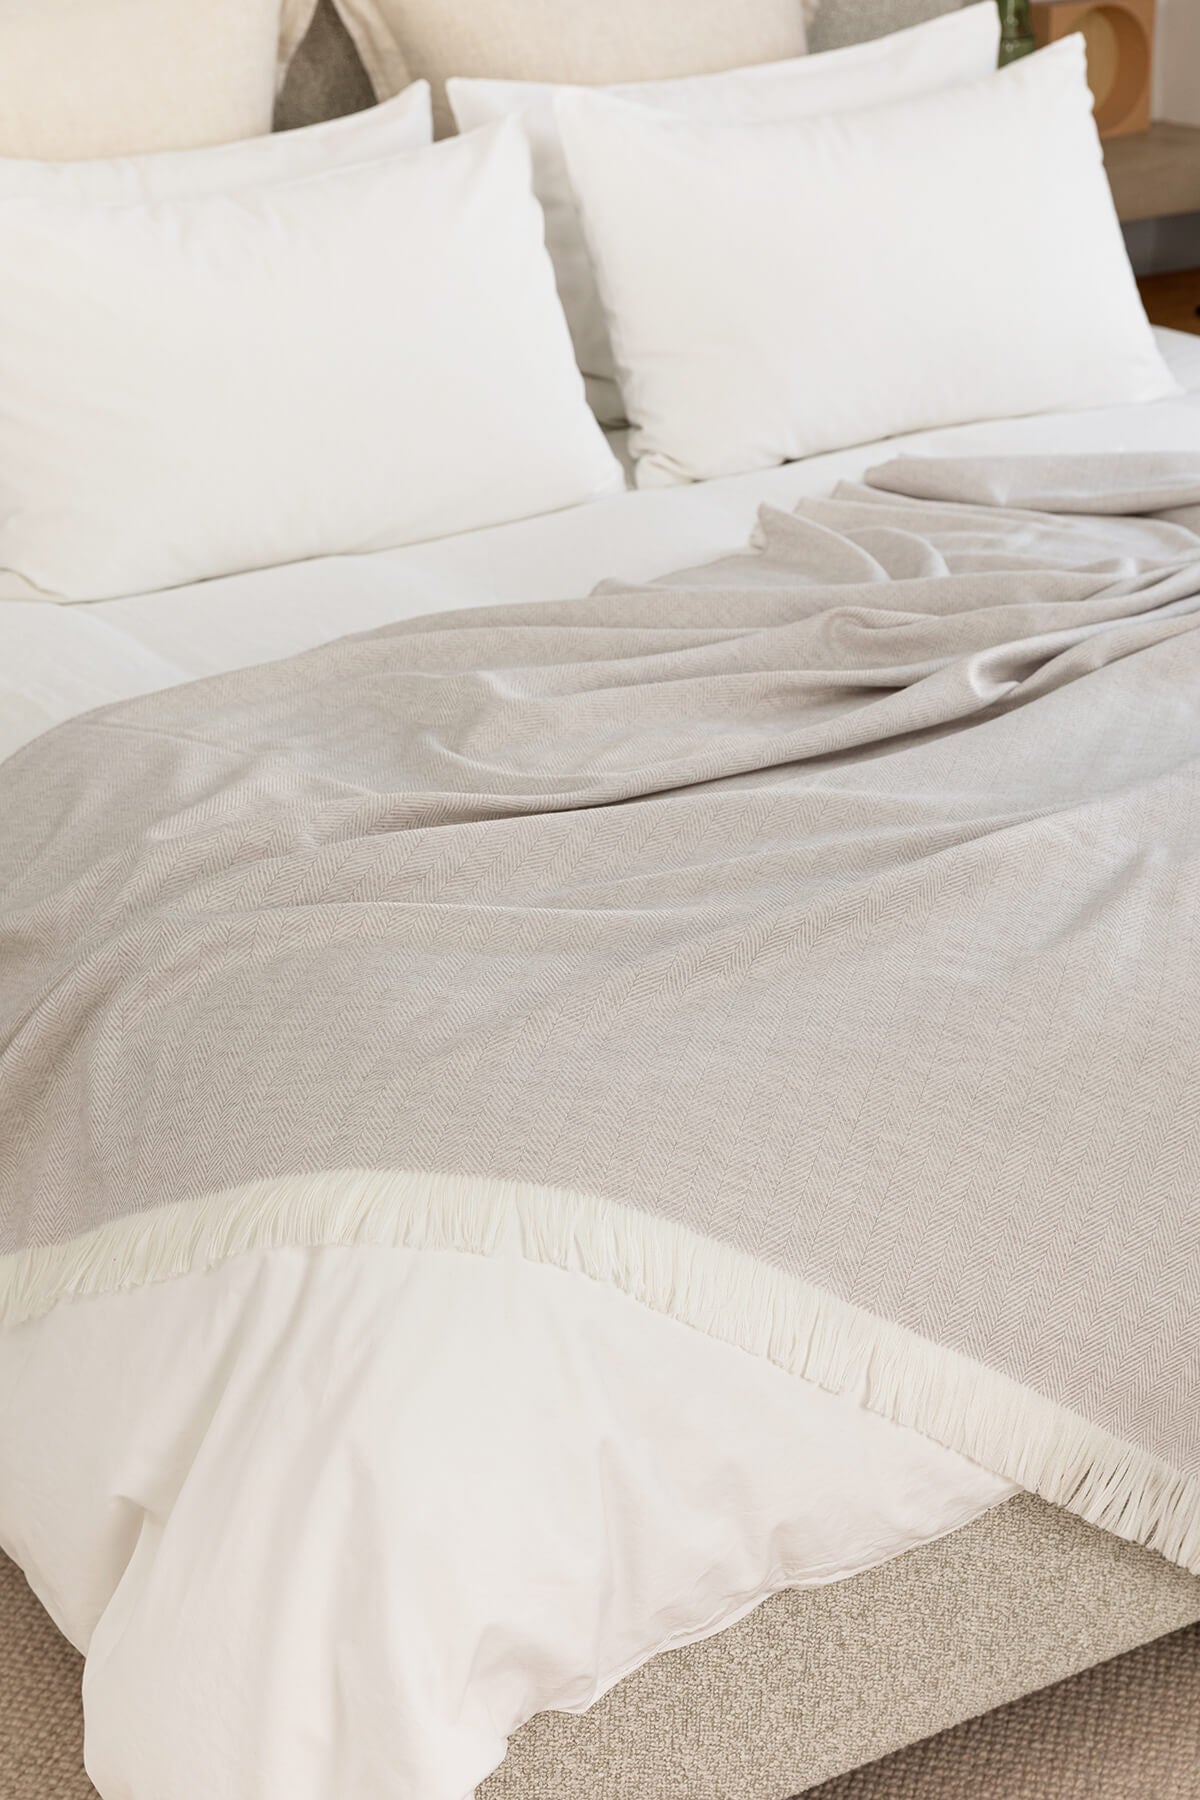 Johnstons of Elgin’s Herringbone Merino Bed Throw in Mist & White on bed WD001115RU5856ONE